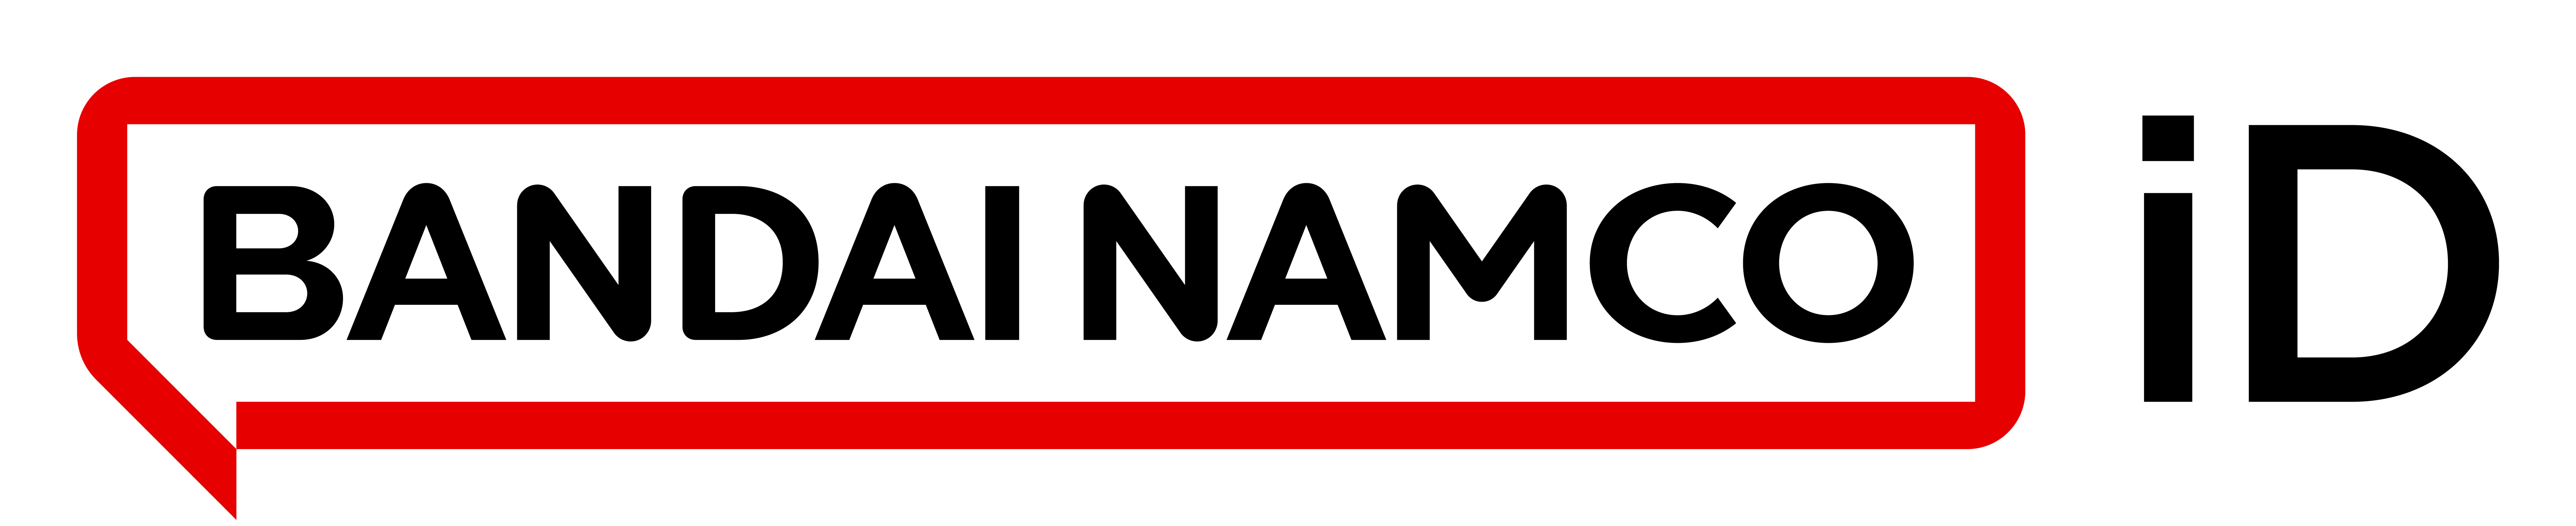 Sign Up Bandai Namco Id